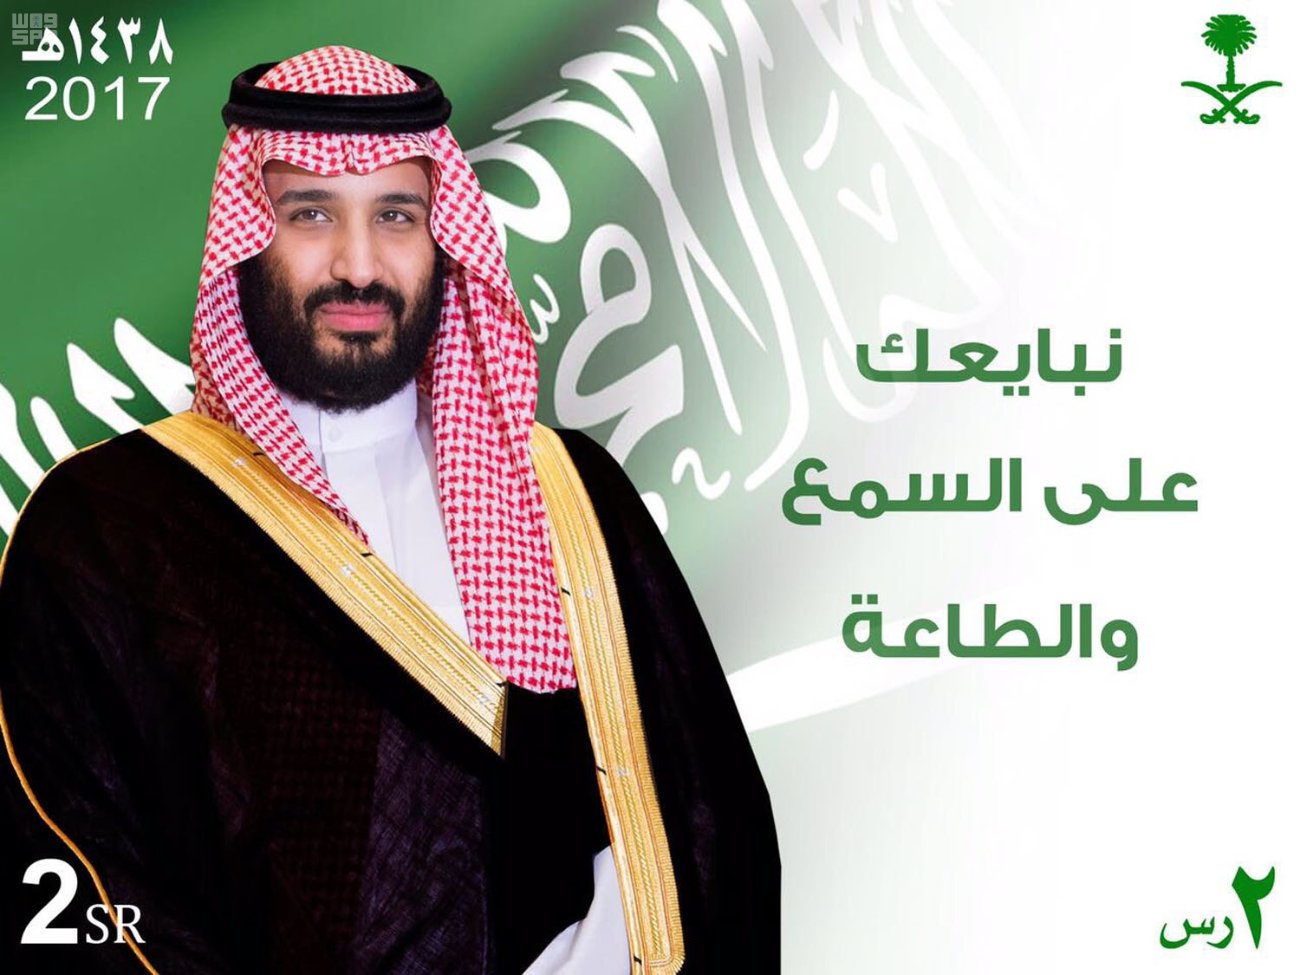 بالصور.. البريد السعودي يصدر طابعاً توثيقياً لمبايعة نائب الملك